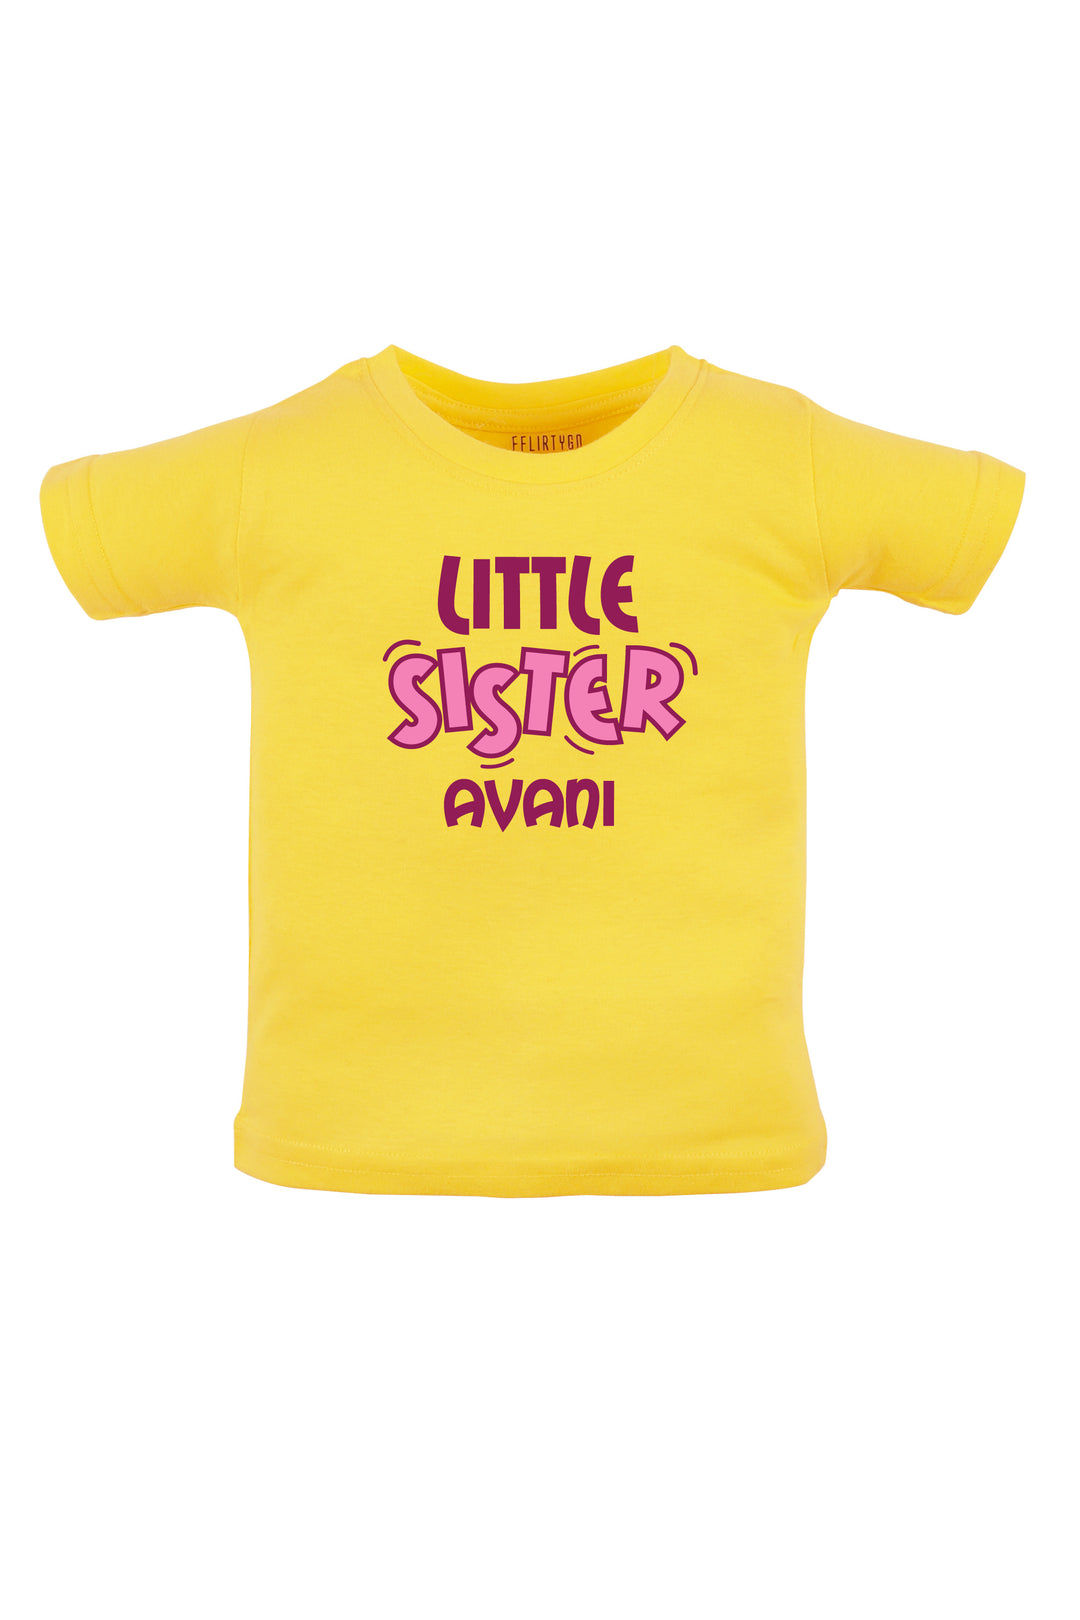 Little Sister W/ Custom Name